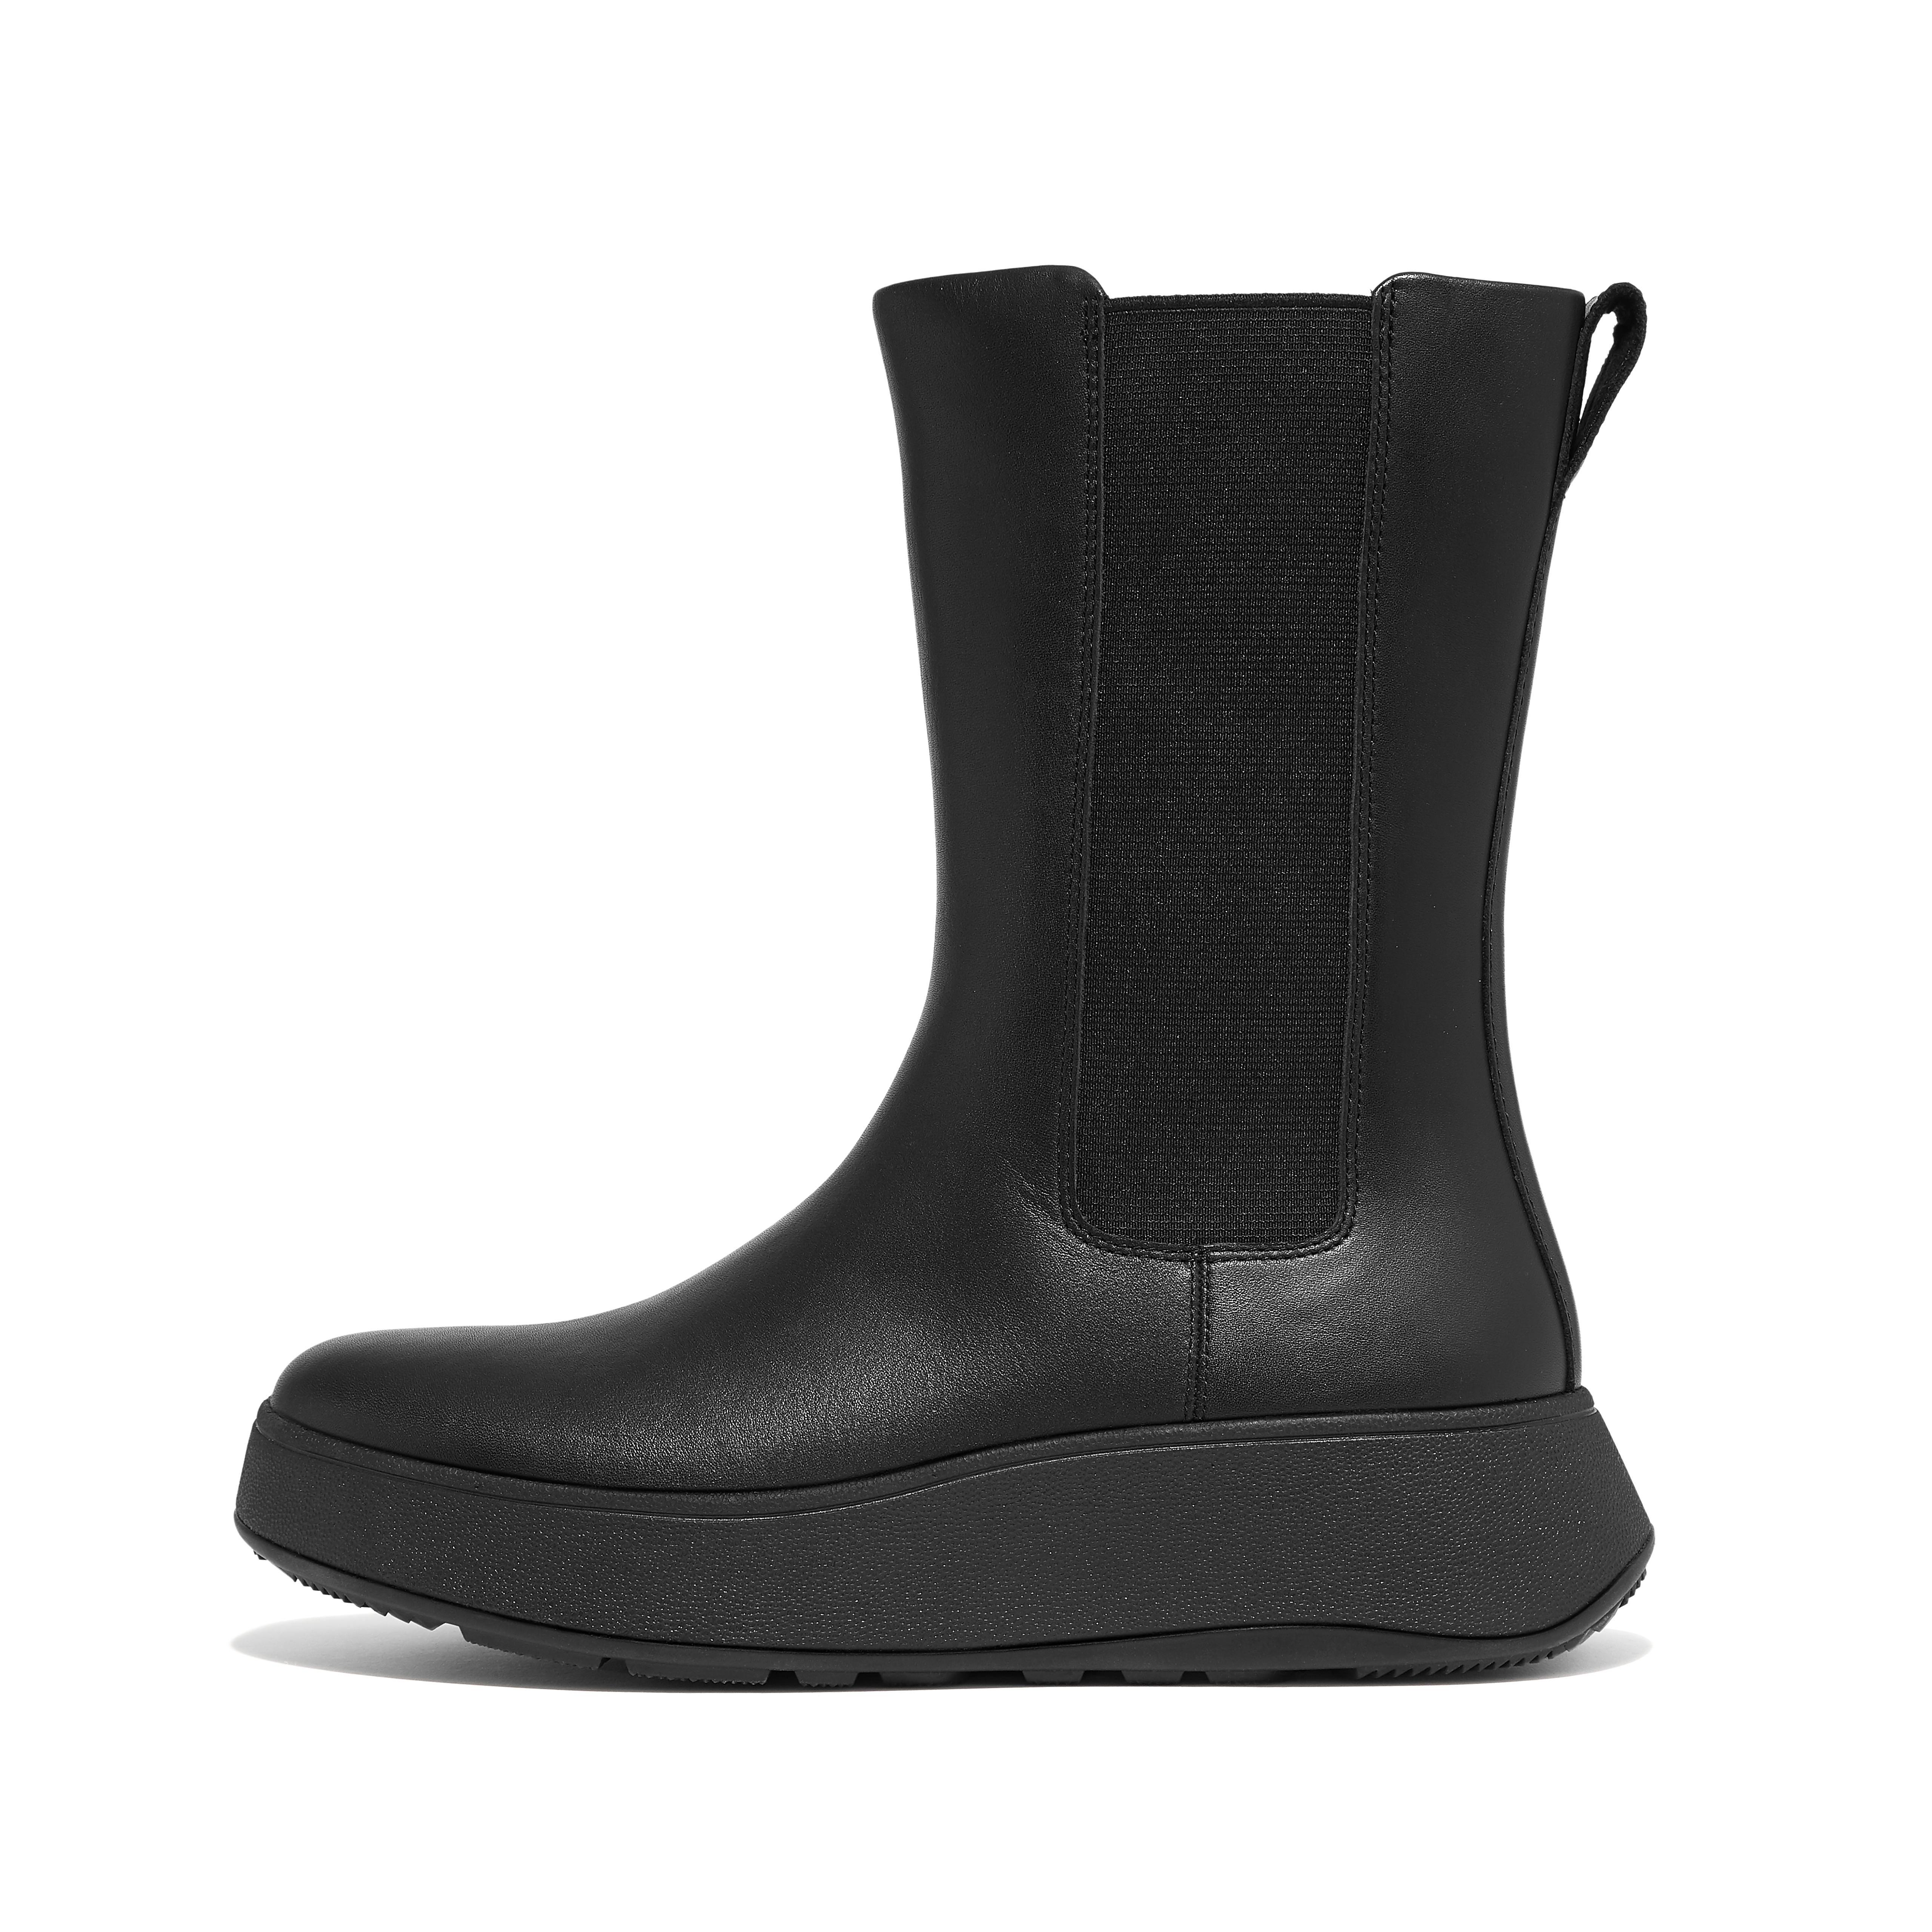 핏플랍 Fitflop Leather Flatform High Chelsea Boots,All Black